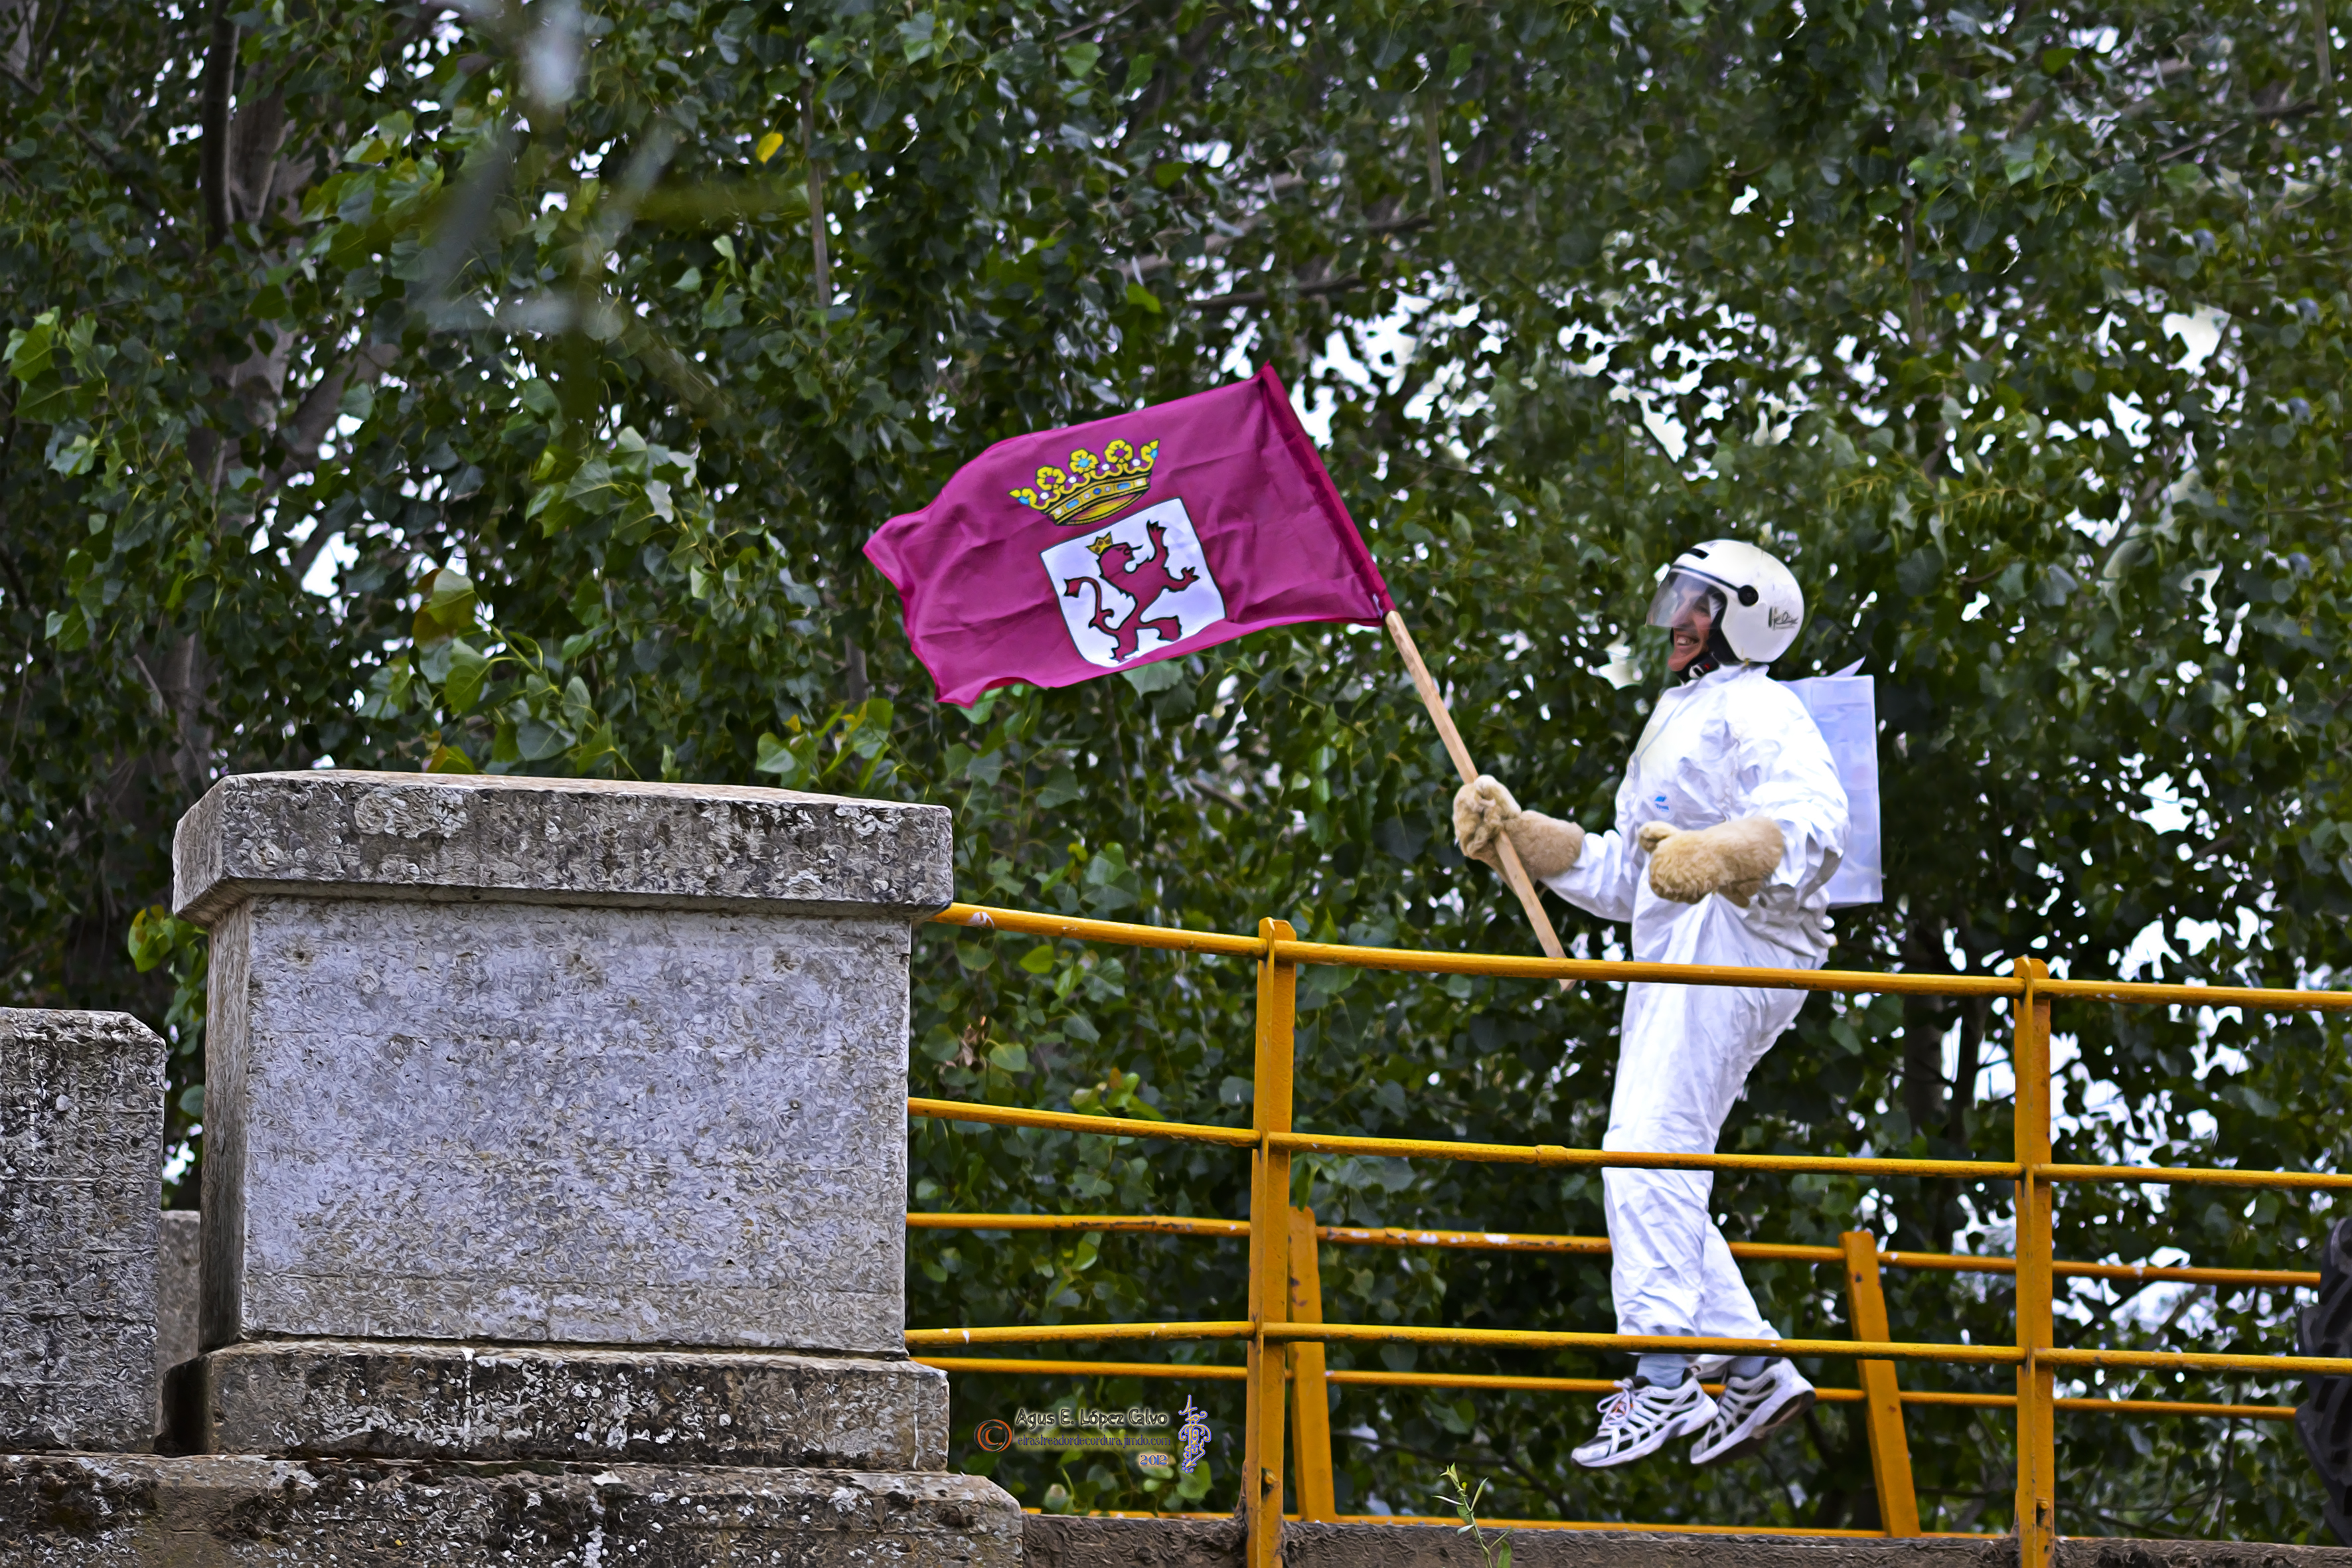 1-Astronauta sobre el rio Tuerto con bandera de Leon.jpg